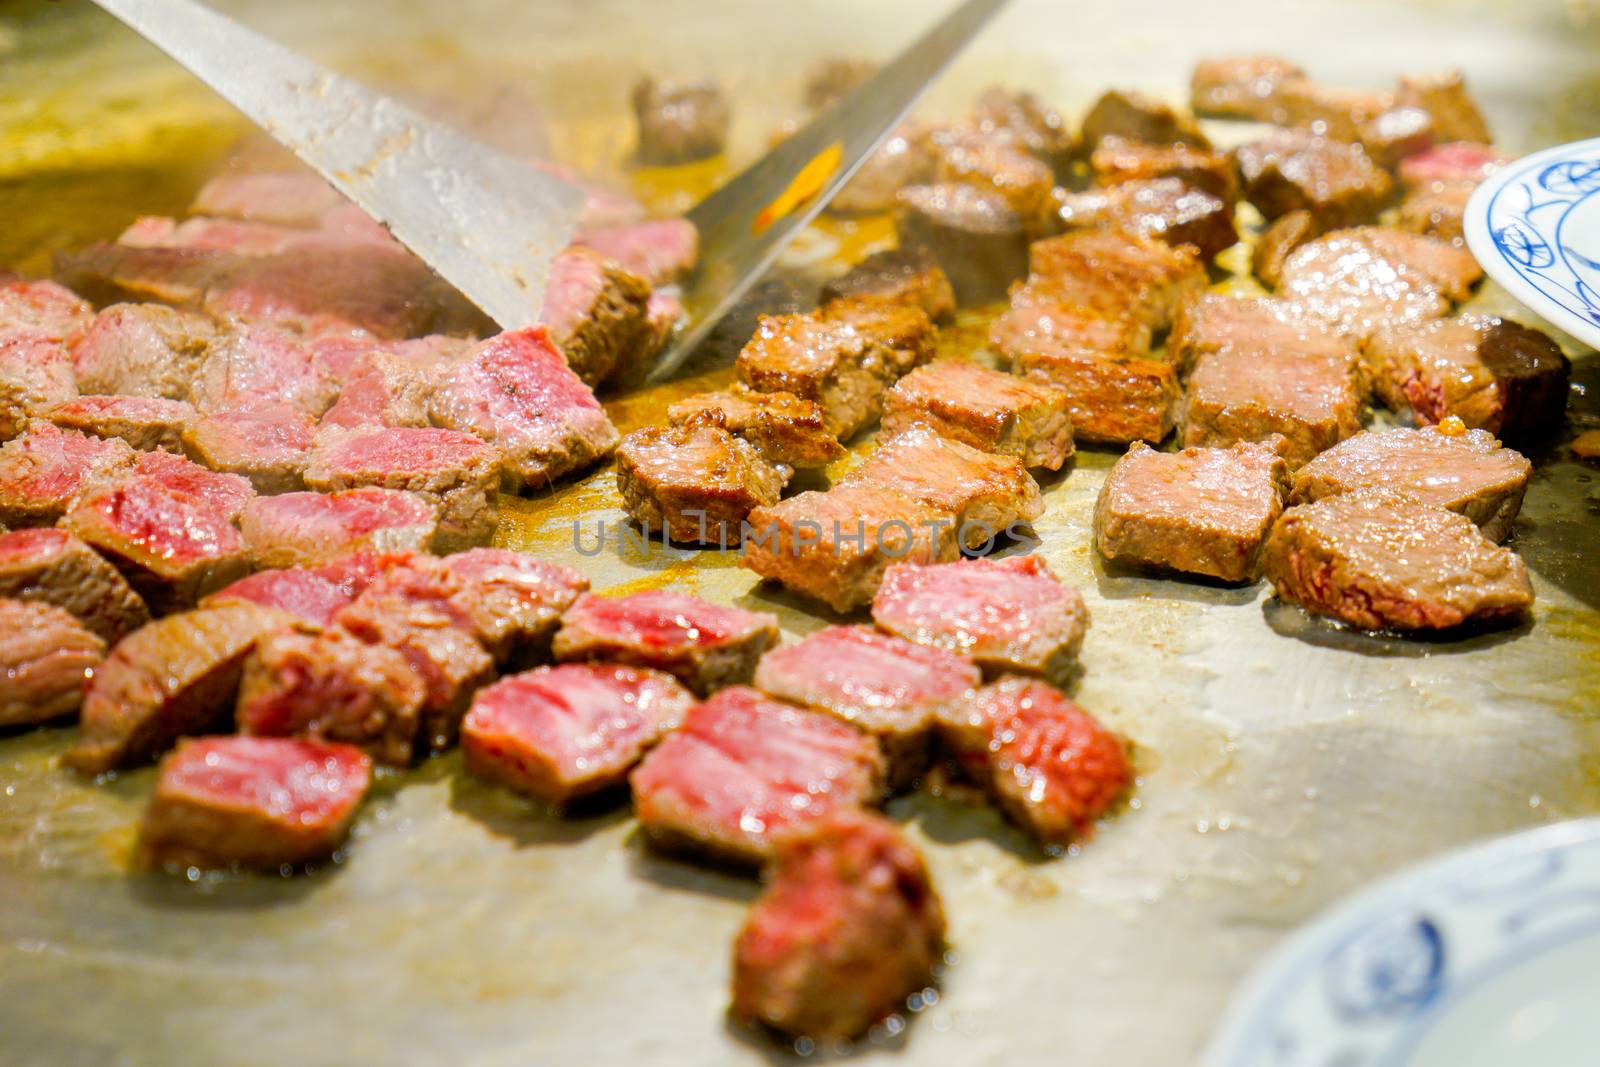 Kobe steak on the hot pan in Japan